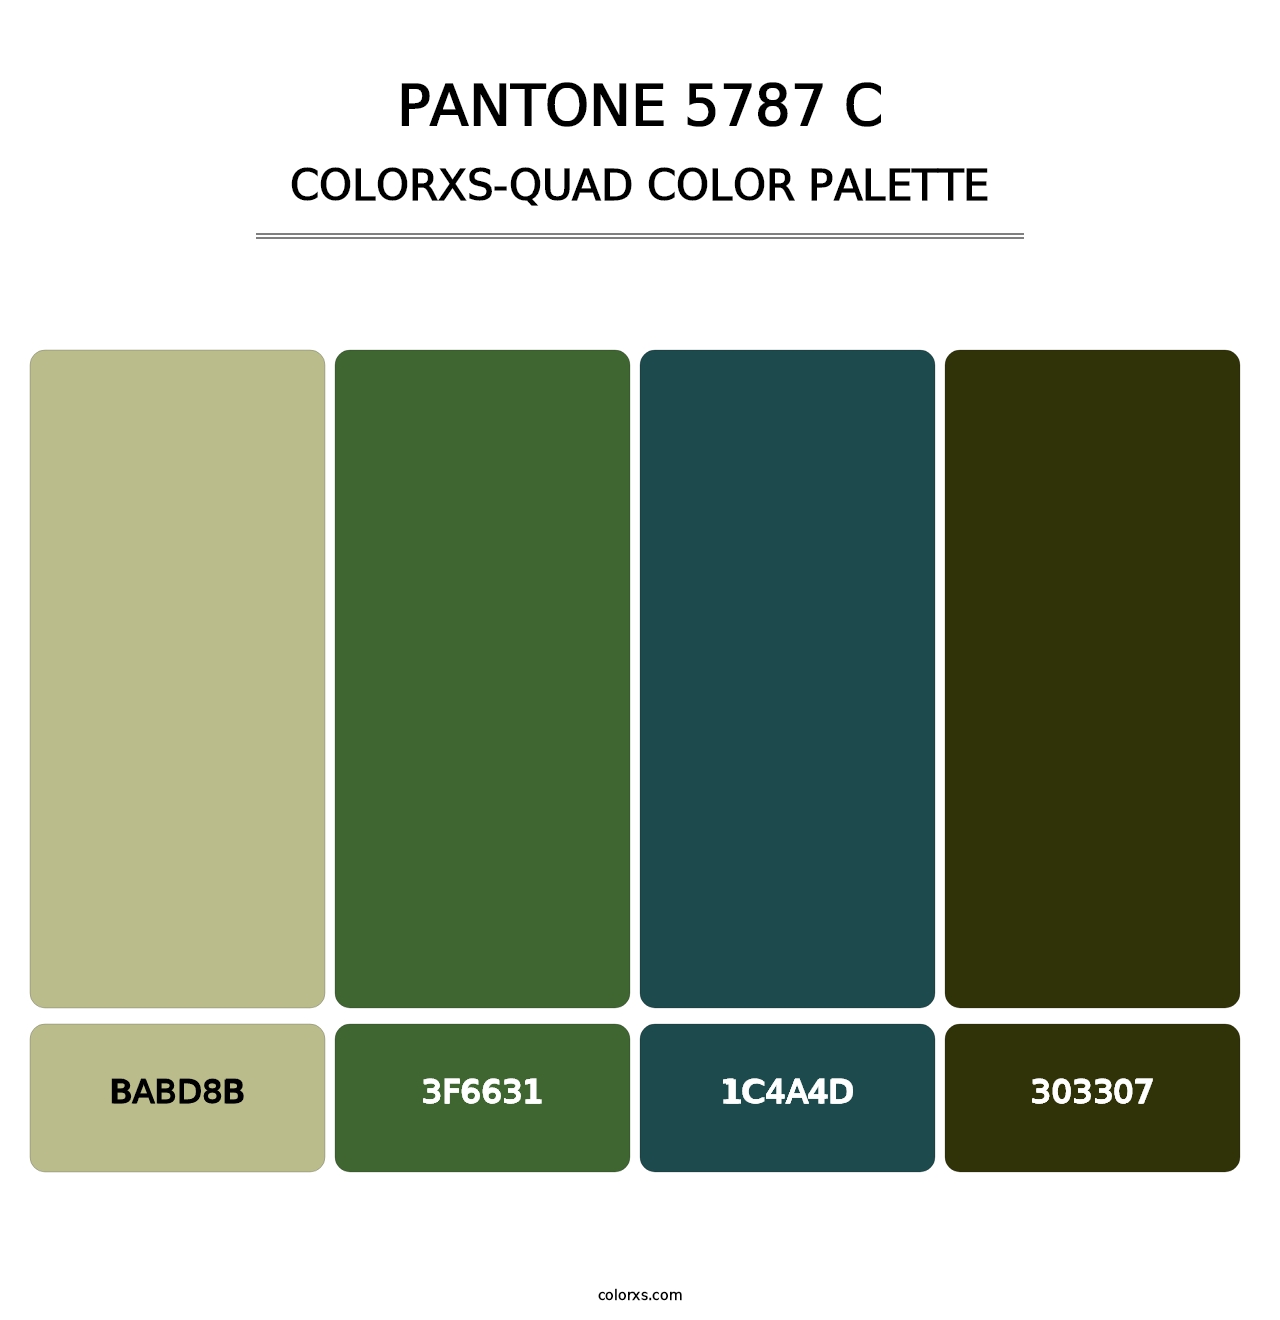 PANTONE 5787 C - Colorxs Quad Palette